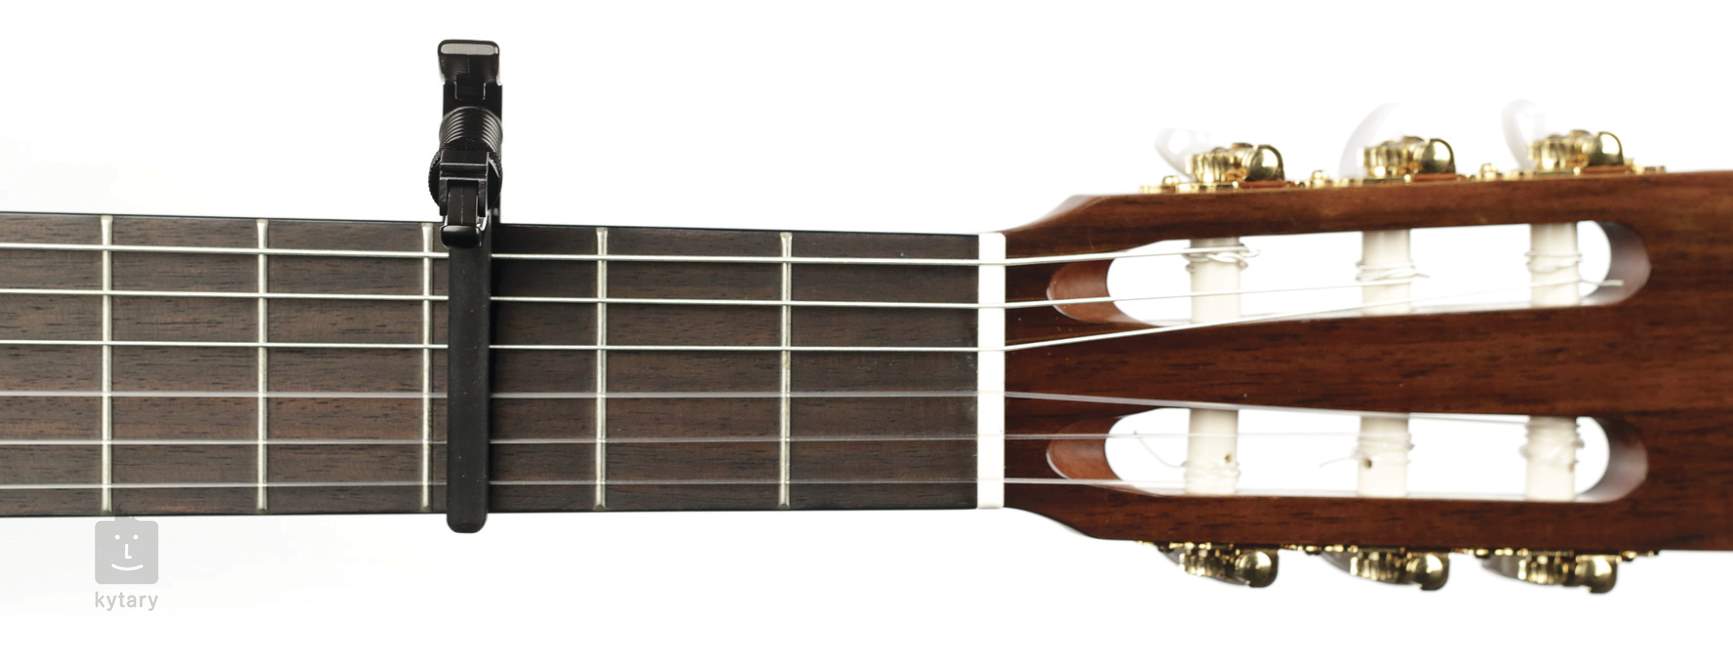 Capodastre guitare classique PW-CP-13 a vendre